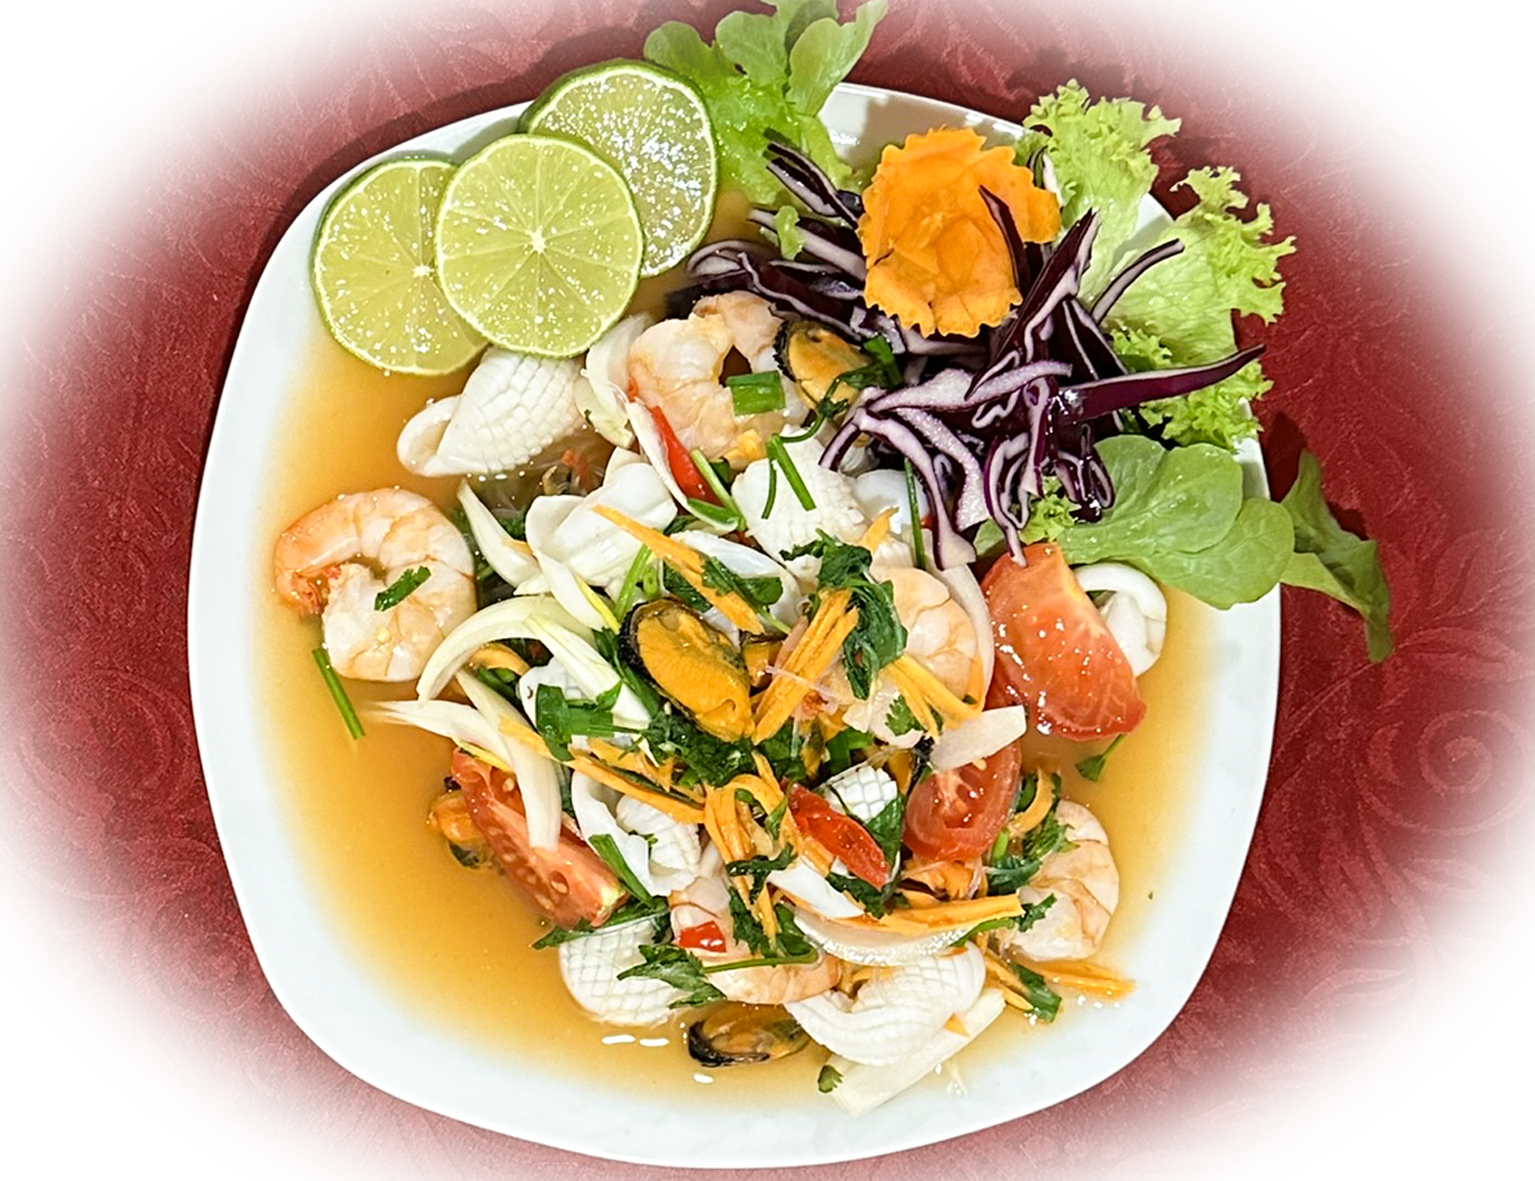 Yam Ruam ist ein köstlicher thailändischer Meeresfrüchtesalat, der eine vielfältige Auswahl an Meere